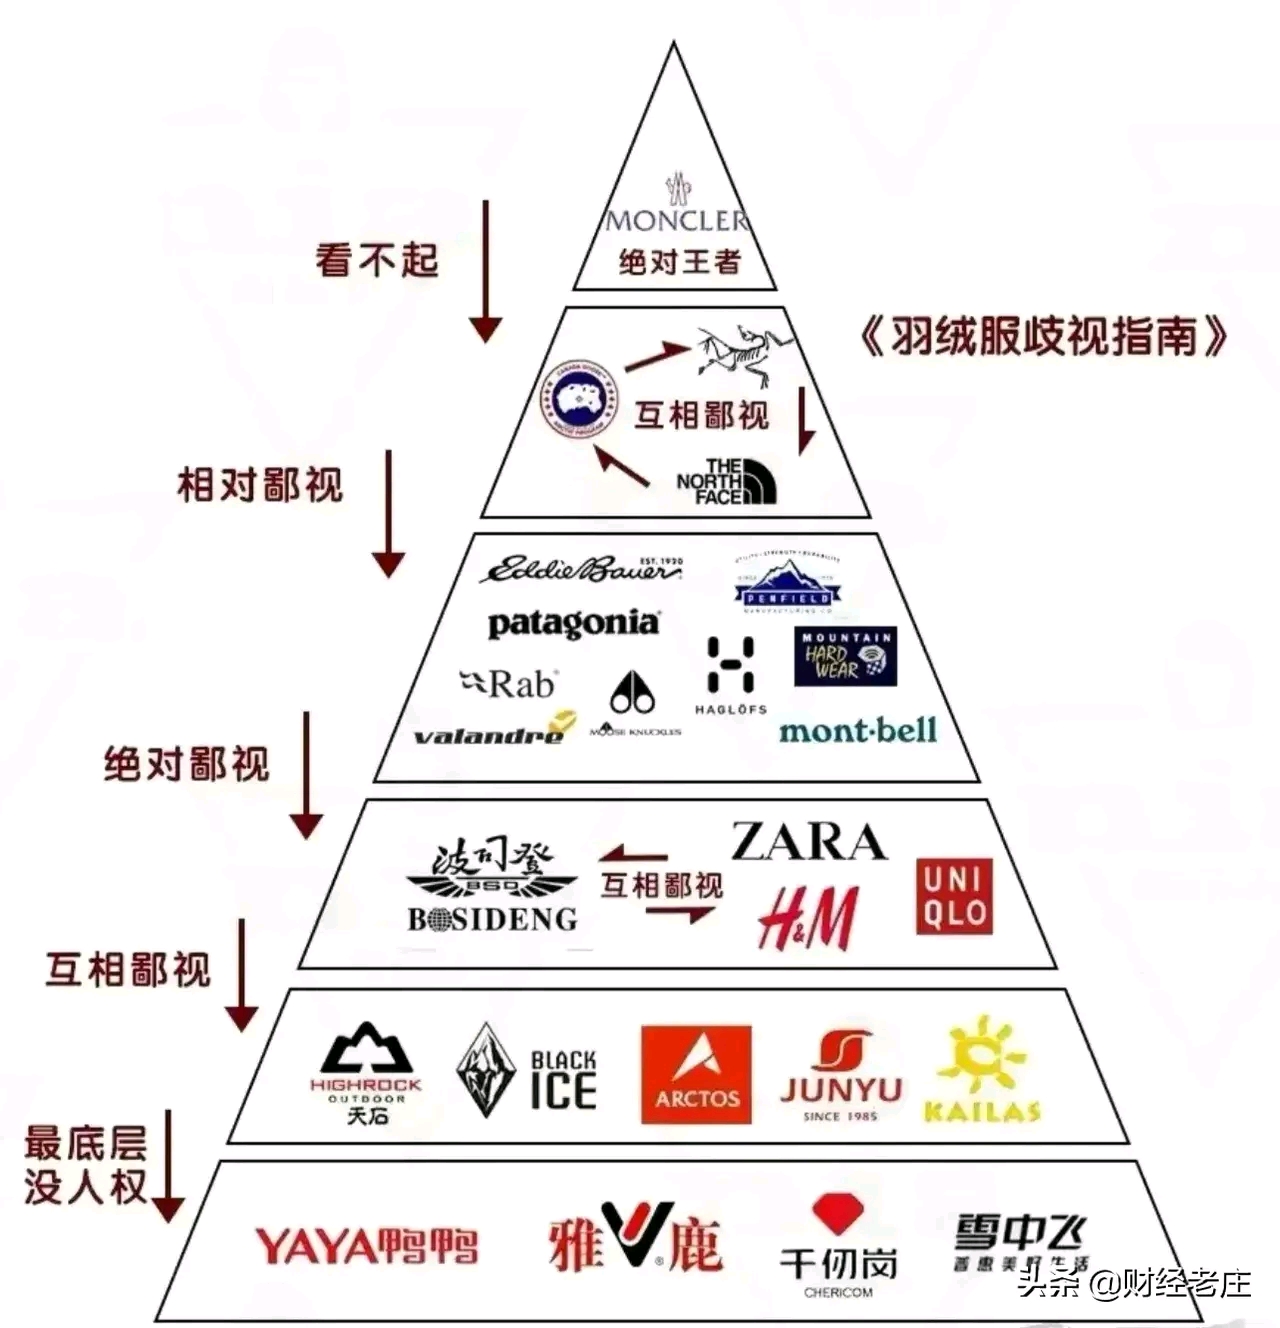 从《羽绒服品牌鄙视链》的联想到中国品牌所处在的地位